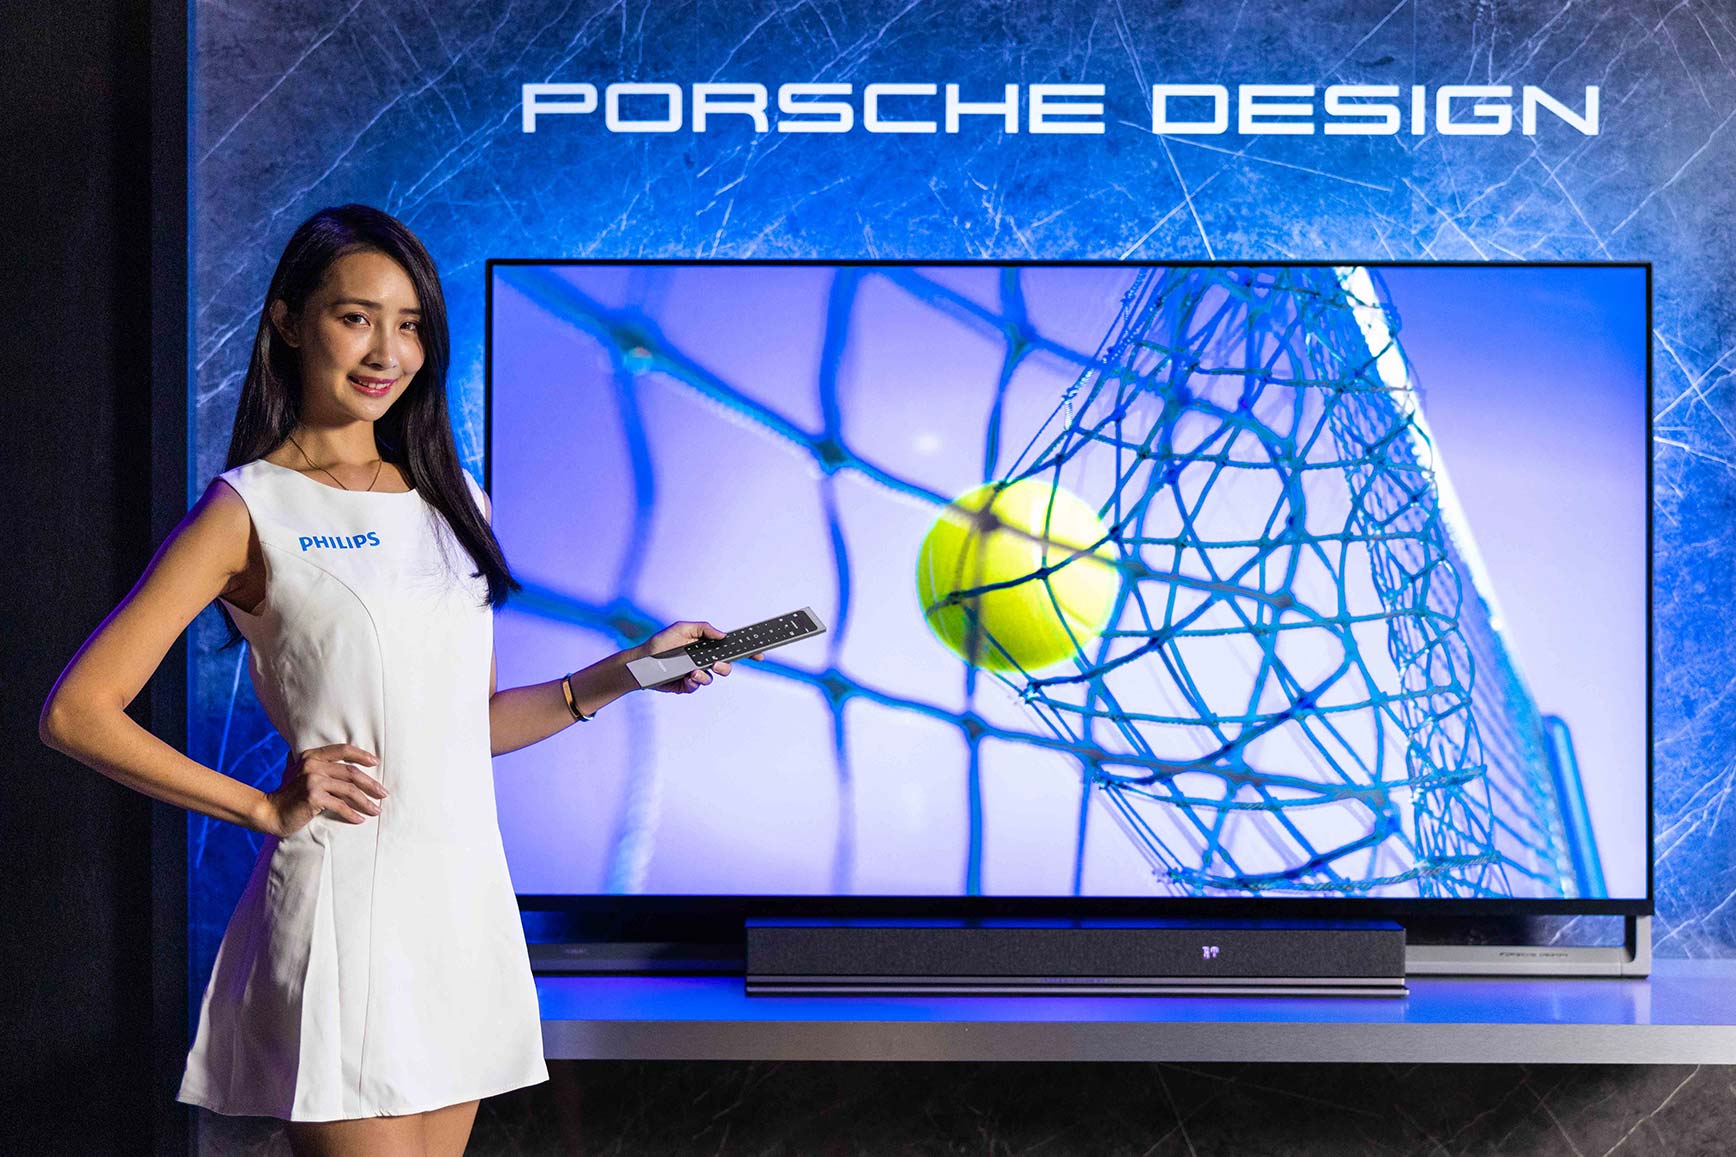 重磅聯手，Porsche Design頂級超跑工藝設計首度開進家庭影音娛樂領域！  獨家Ambilight情境光視覺科技、量子點色彩顯示技術如實呈現 智慧科技結合高端時尚打造精品家居，Philips引領定義新潮奢！